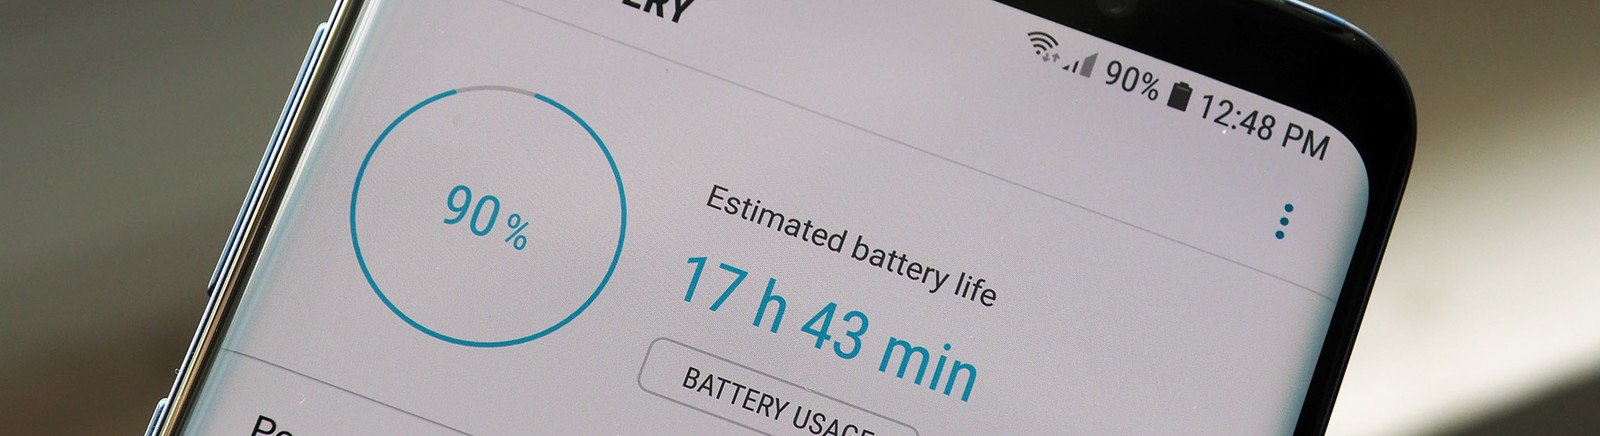 Android: jak sprawdzić stan baterii i dlaczego traci ona pojemność